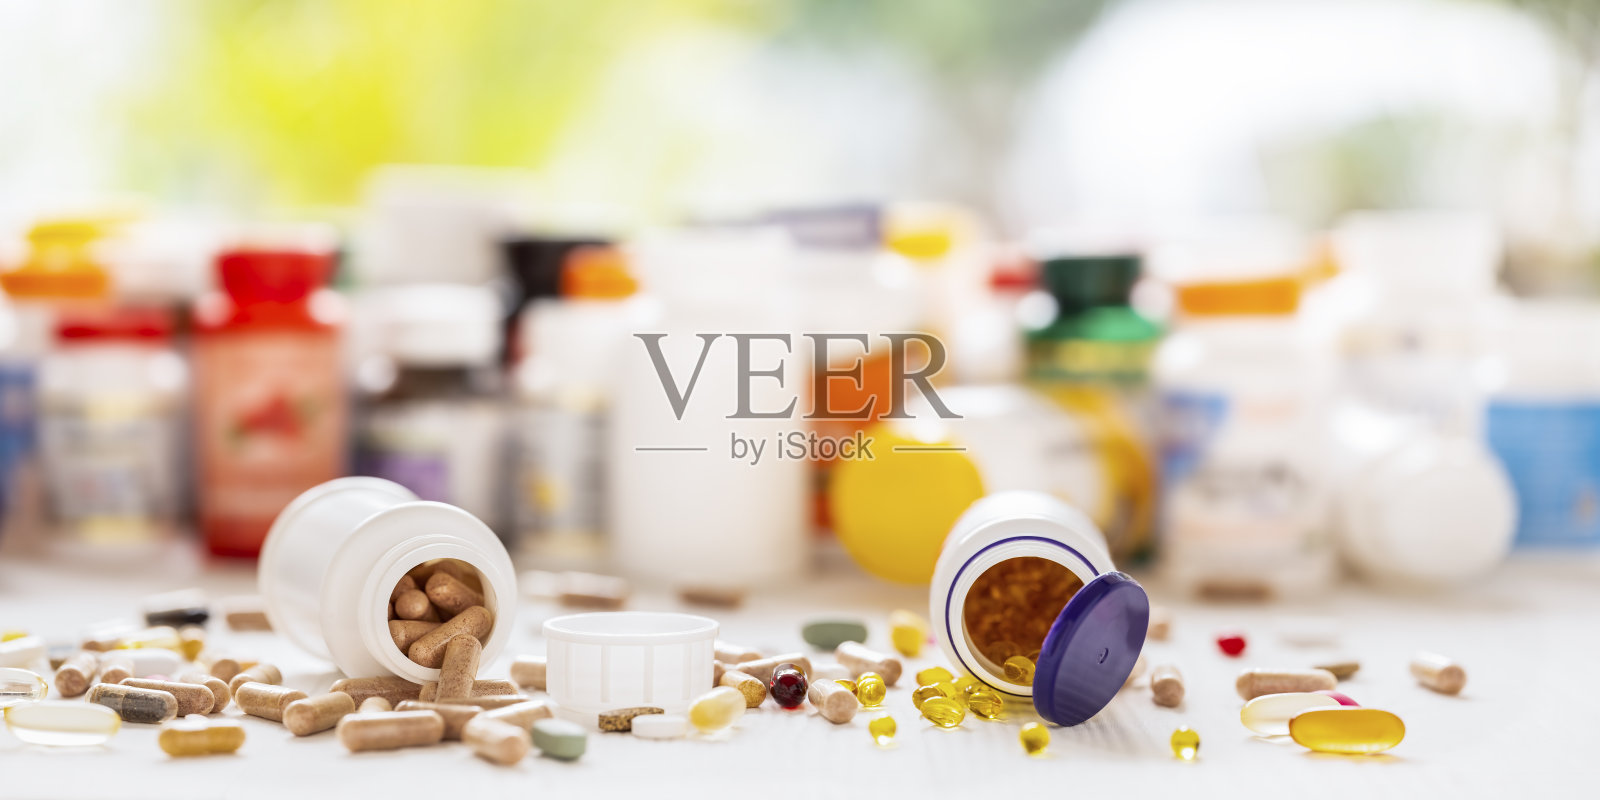 许多营养保健品和维生素都以胶囊、片剂为背景，以其药瓶为背景，聚焦深度较浅。照片摄影图片